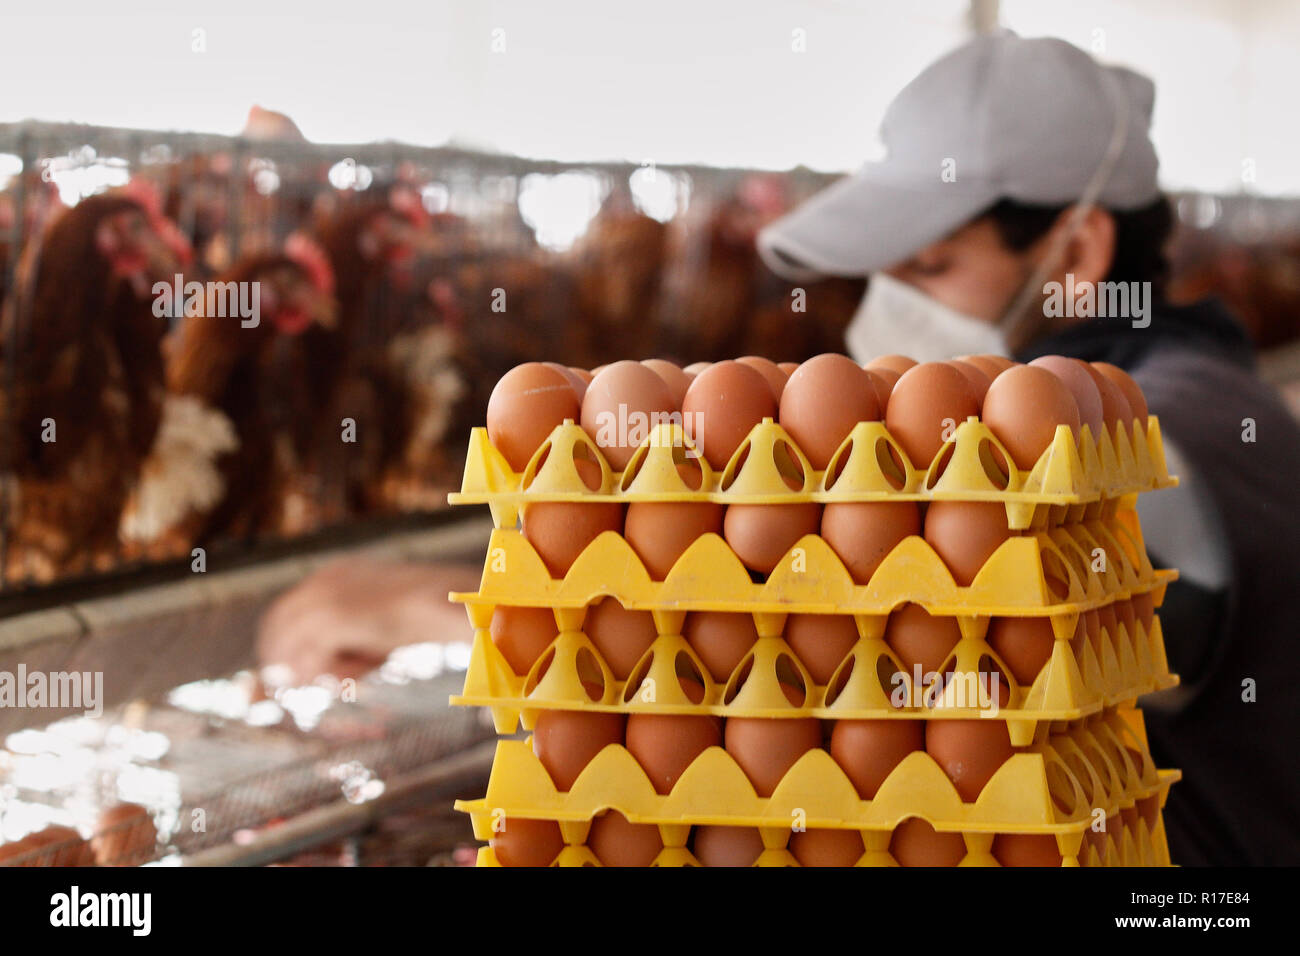 MENDOZA, Argentinien, 13. August 2014. Huhn Brutplatz, Geflügel auf die Produktion von Eiern, luzuriaga von Maipú Stadt Mendoza. Foto: Axel Llore Stockfoto